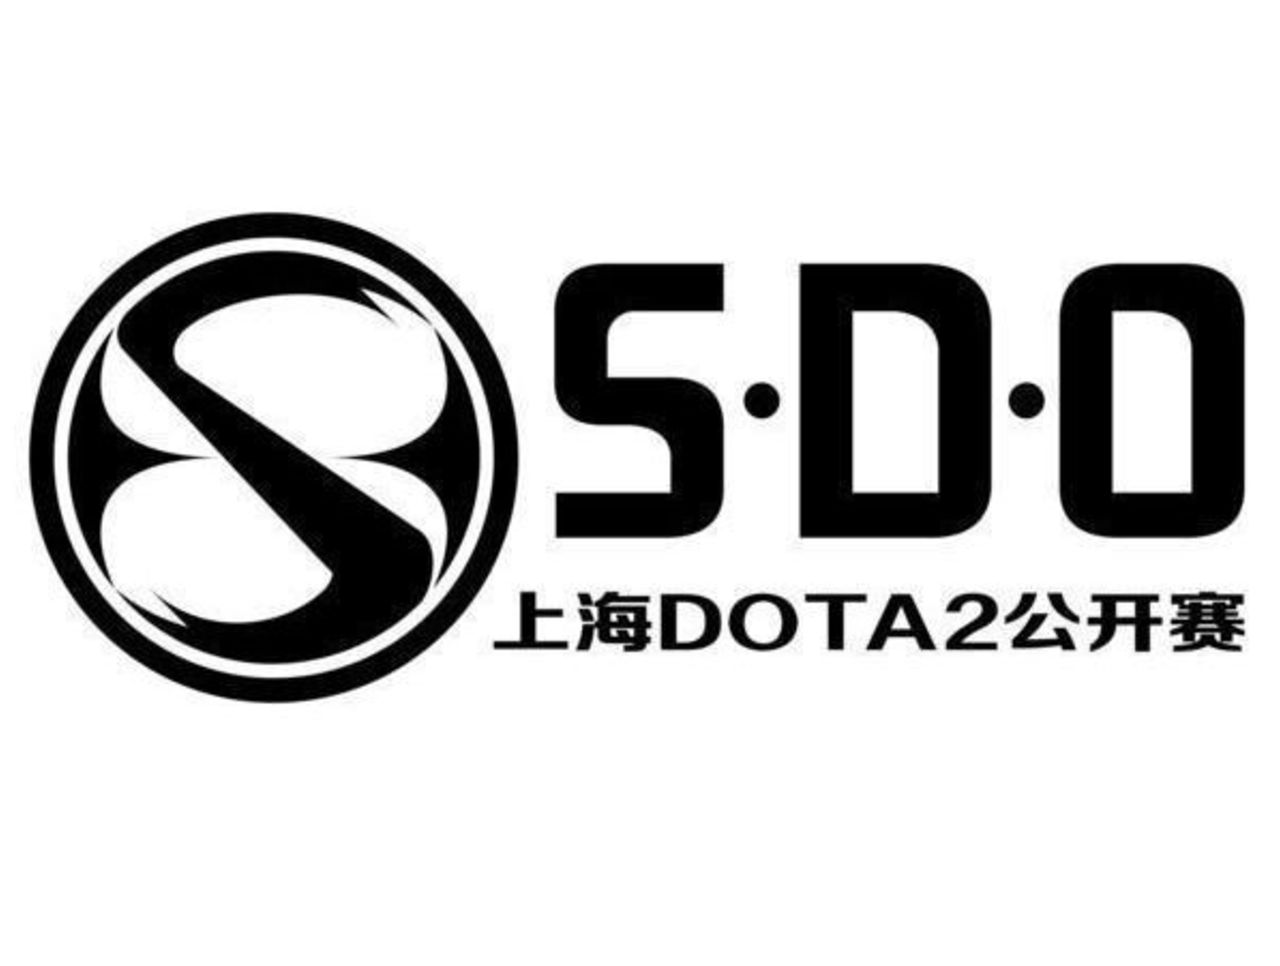 dota 2 logo white